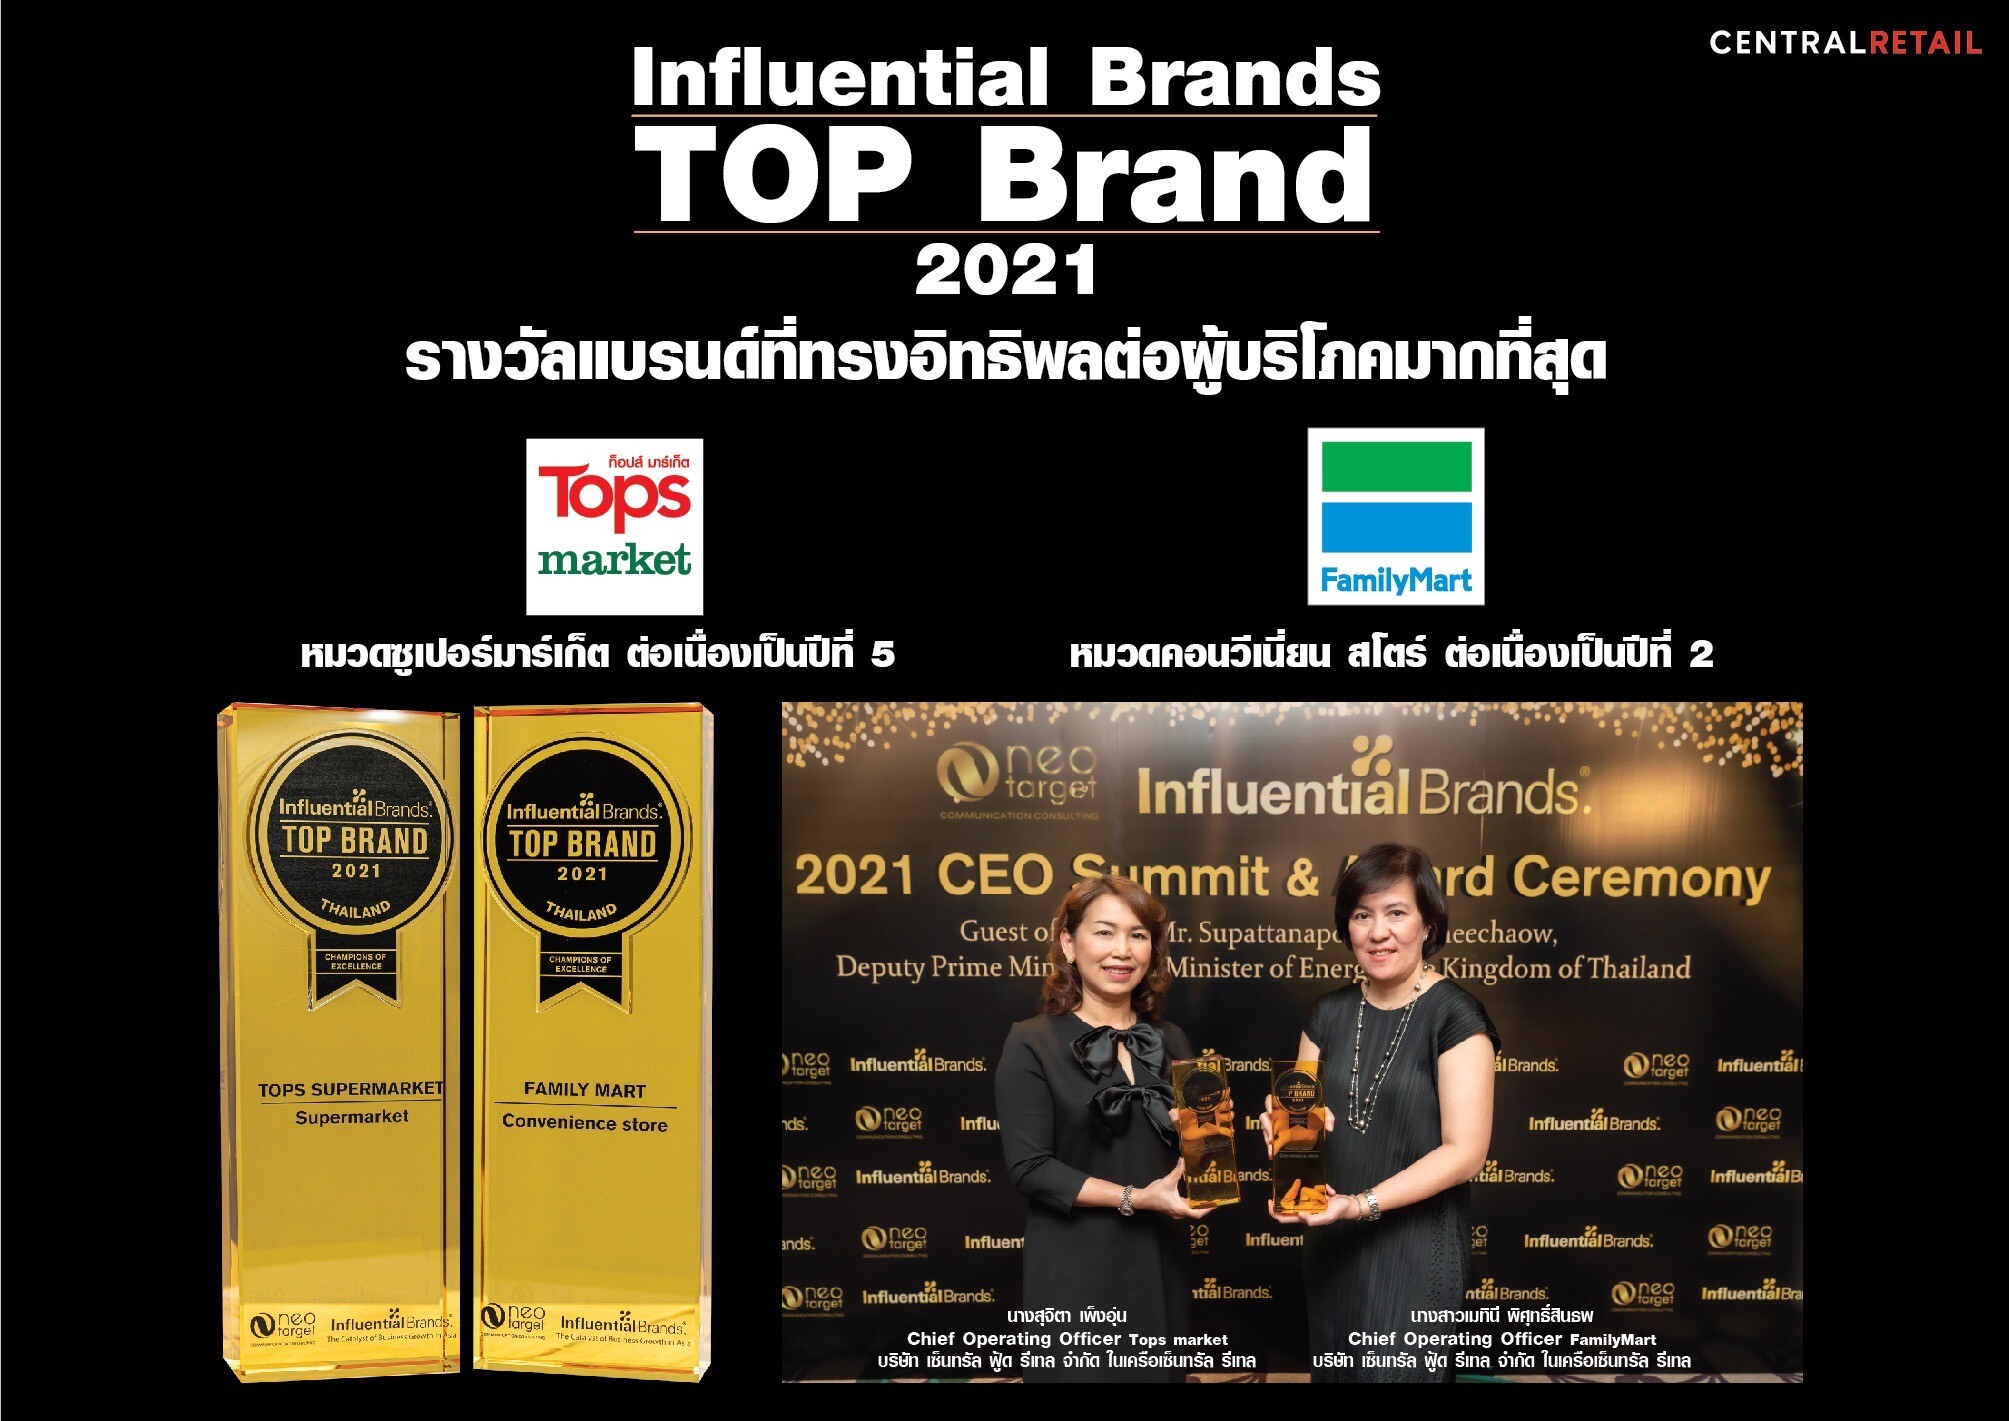 เซ็นทรัล ฟู้ด รีเทล ยืนหนึ่งผู้นำค้าปลีกไทย  นำ ท็อปส์ มาร์เก็ต และ แฟมิลี่มาร์ท คว้า รางวัลแบรนด์ที่ทรงอิทธิพลต่อผู้บริโภคมากที่สุด (Top Influential Brands)